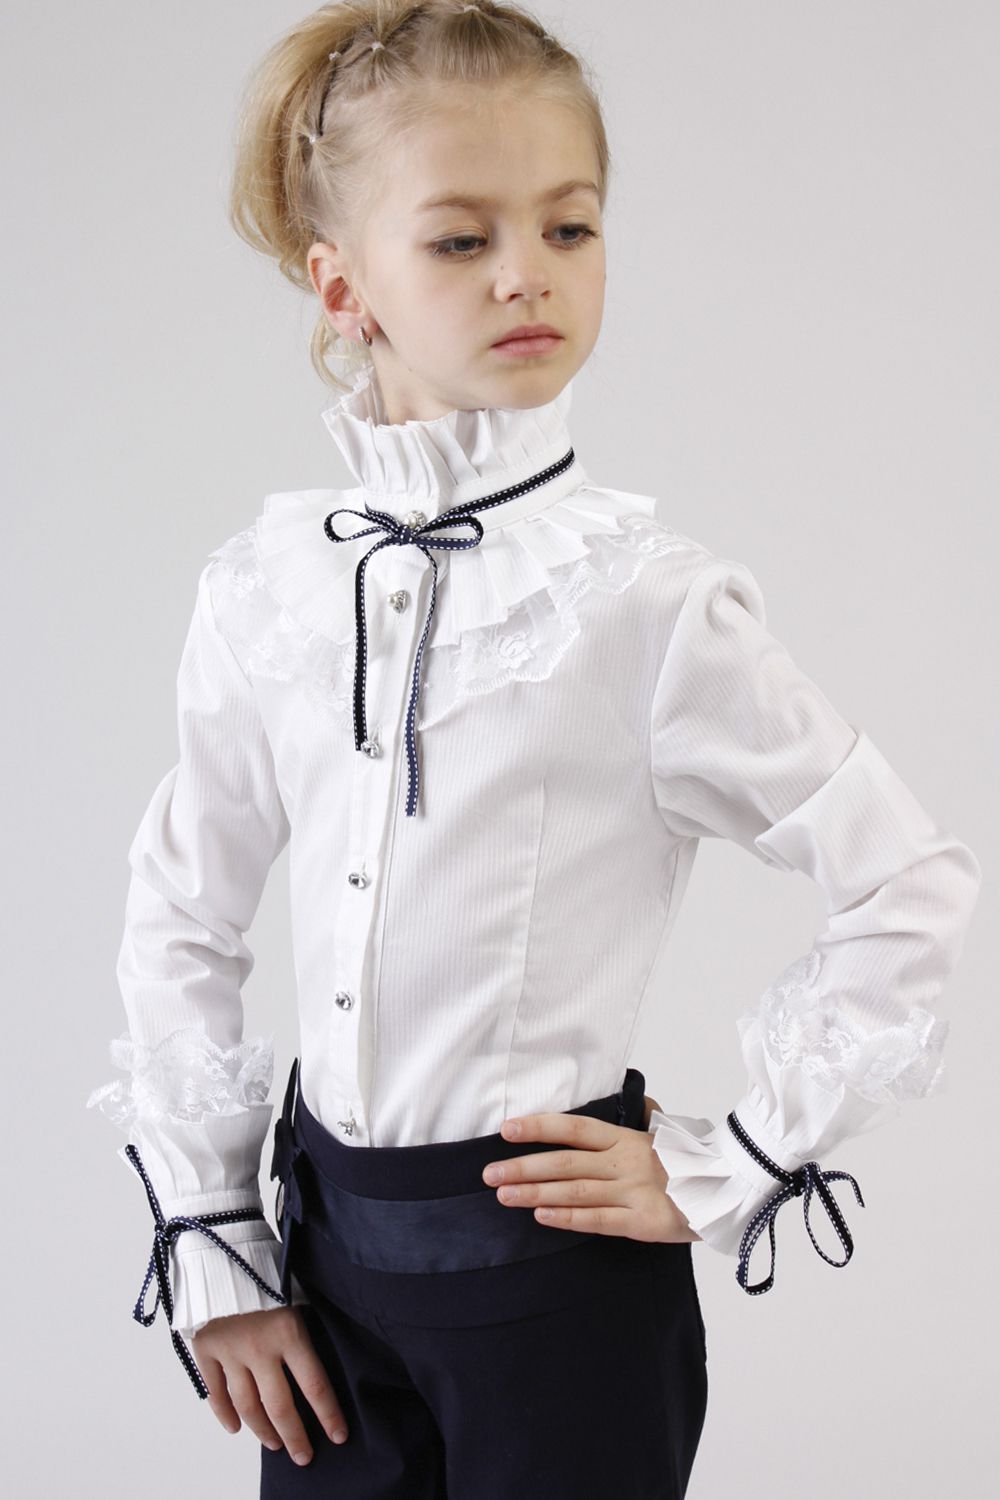 Школьная блузка купить. Школьная блузка Noble people. Красивая блузка для девочки. Блузки для первоклассниц. Блузка белая Школьная для девочки.